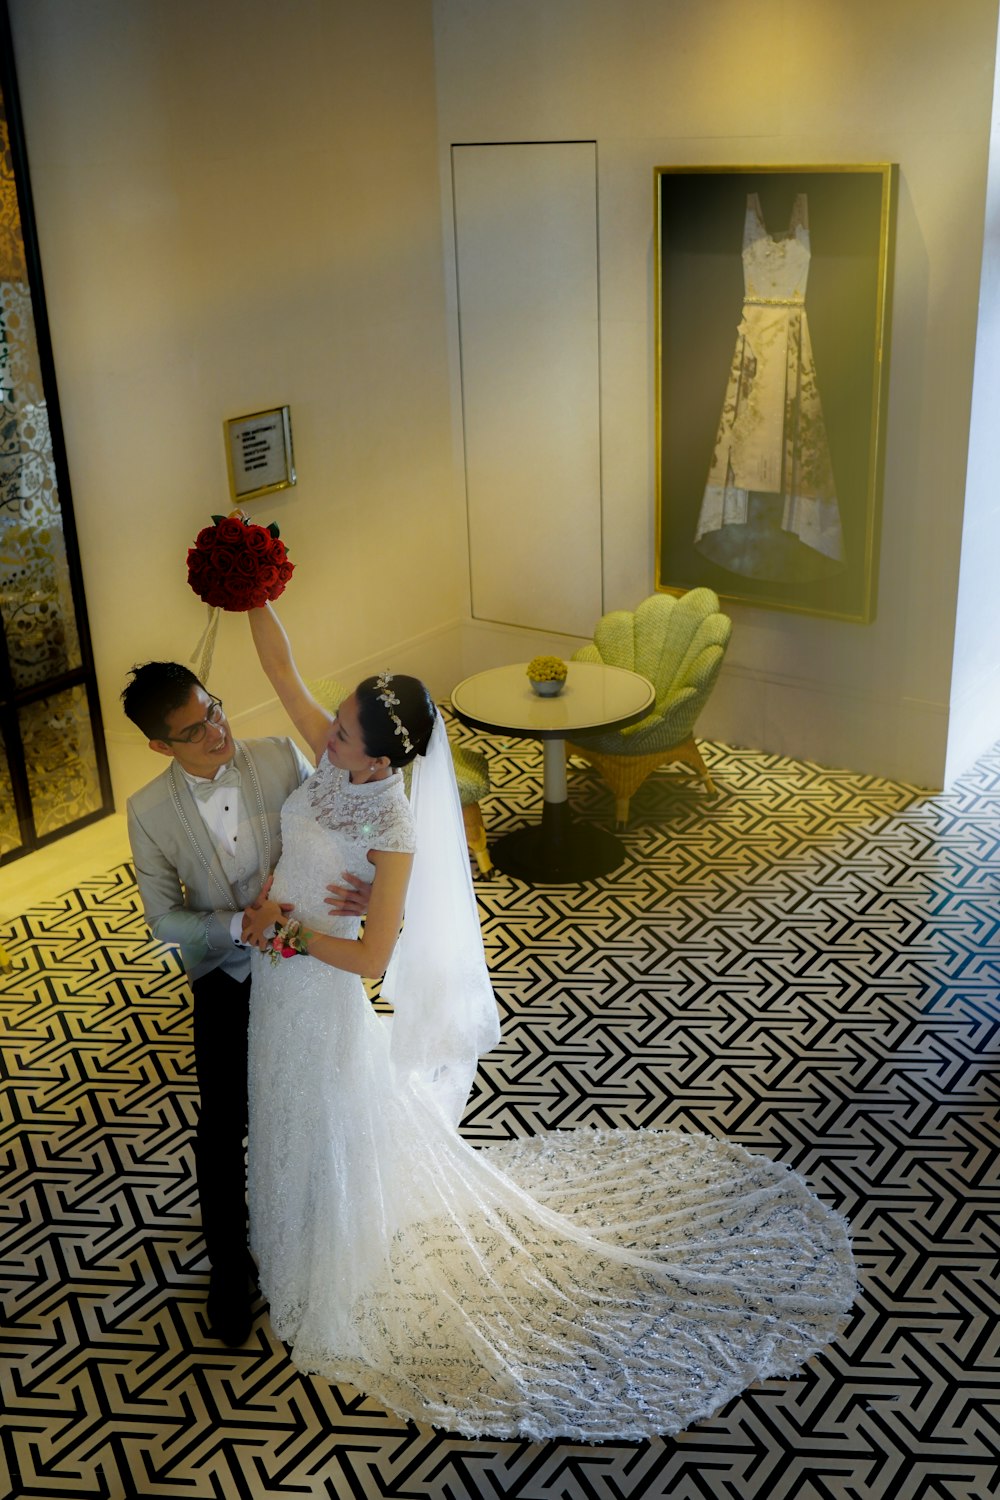 novia y novio de pie sobre alfombra floral blanca y negra